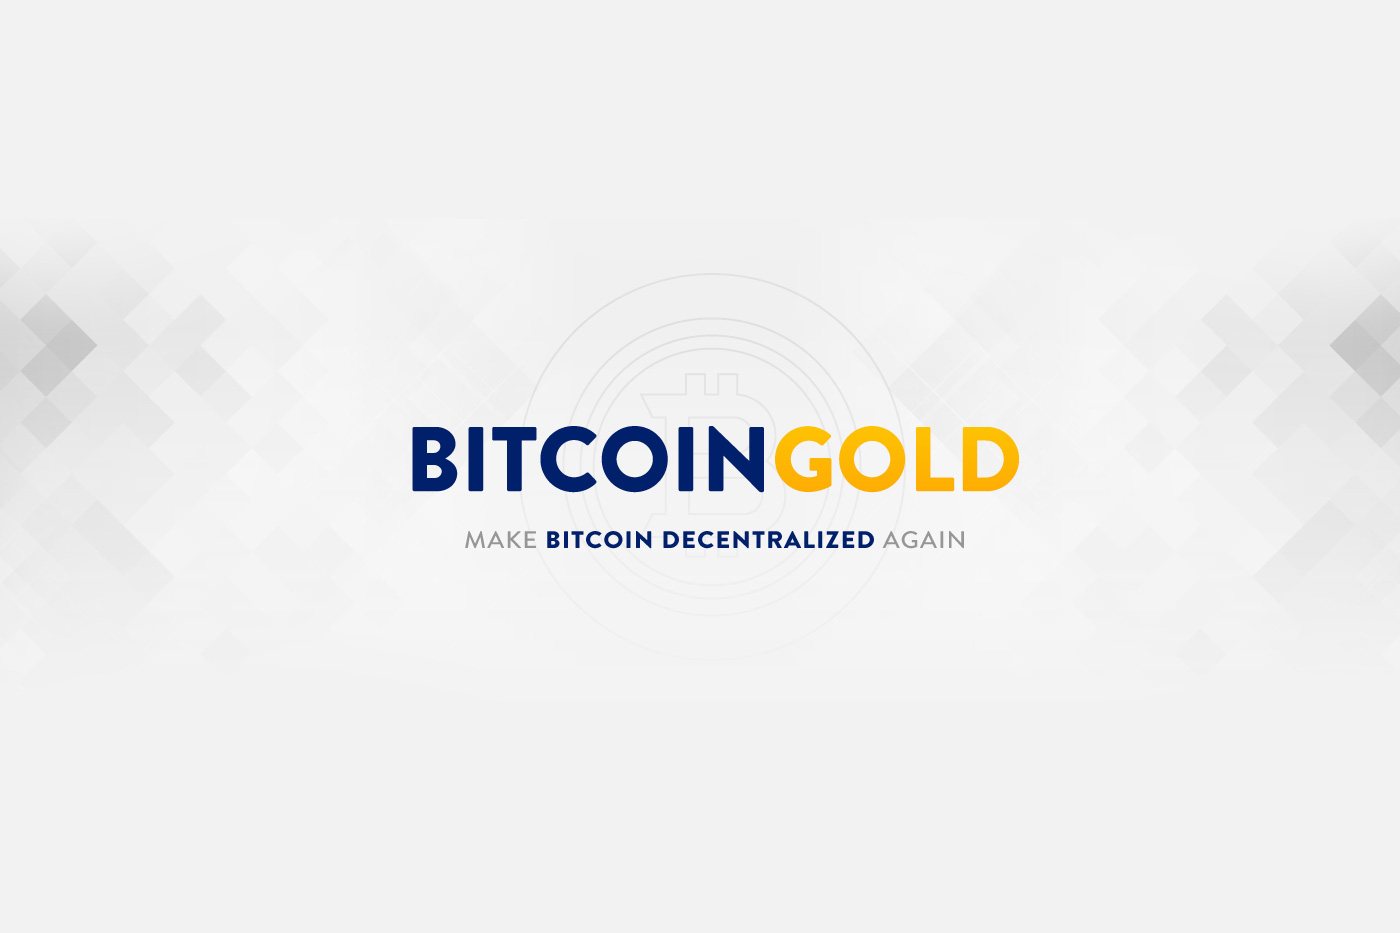 Bitcoin Gold ASIC